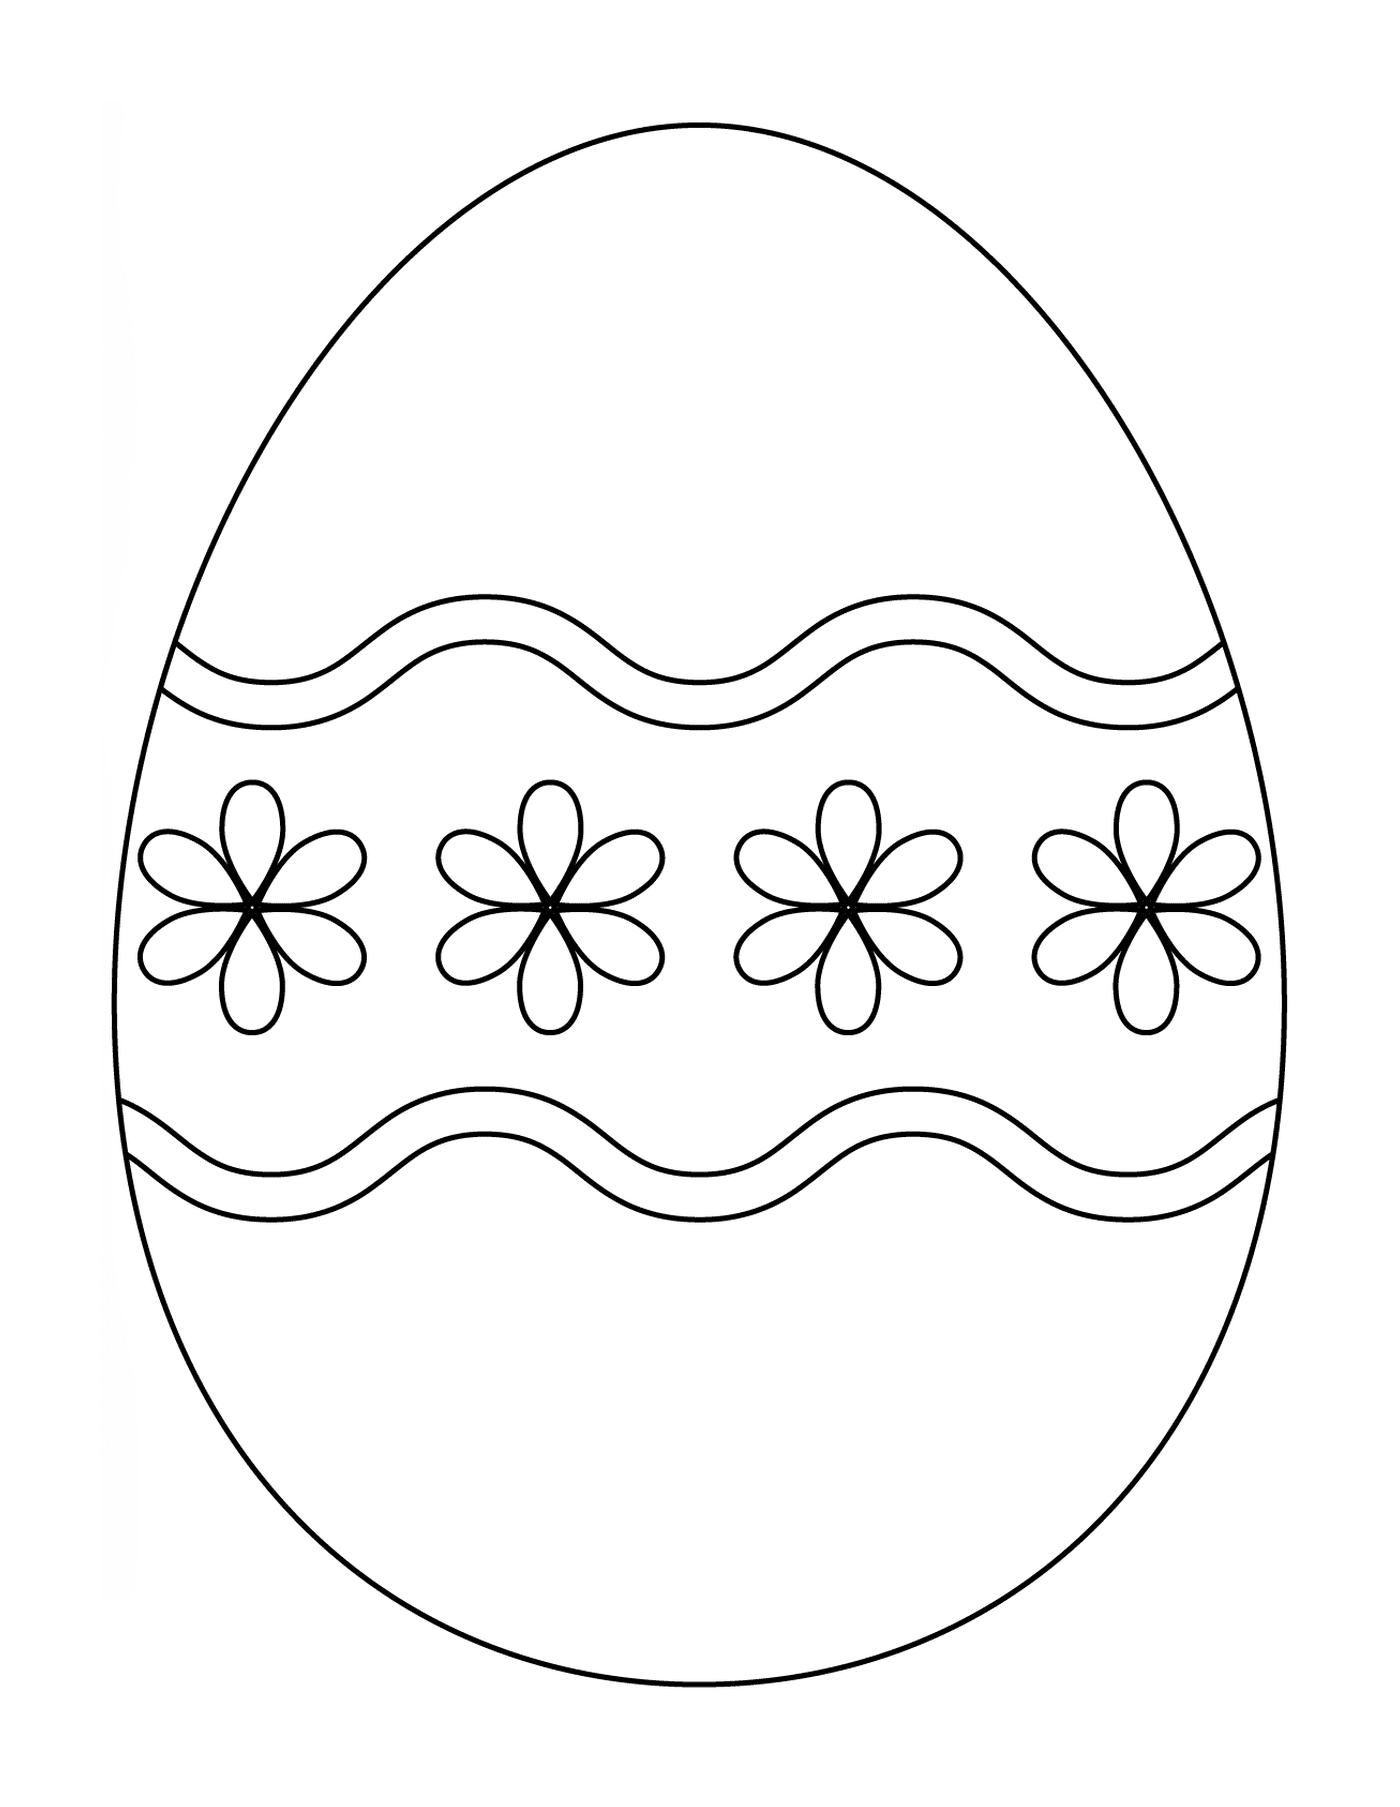  Ovo de Páscoa com um padrão floral simples 